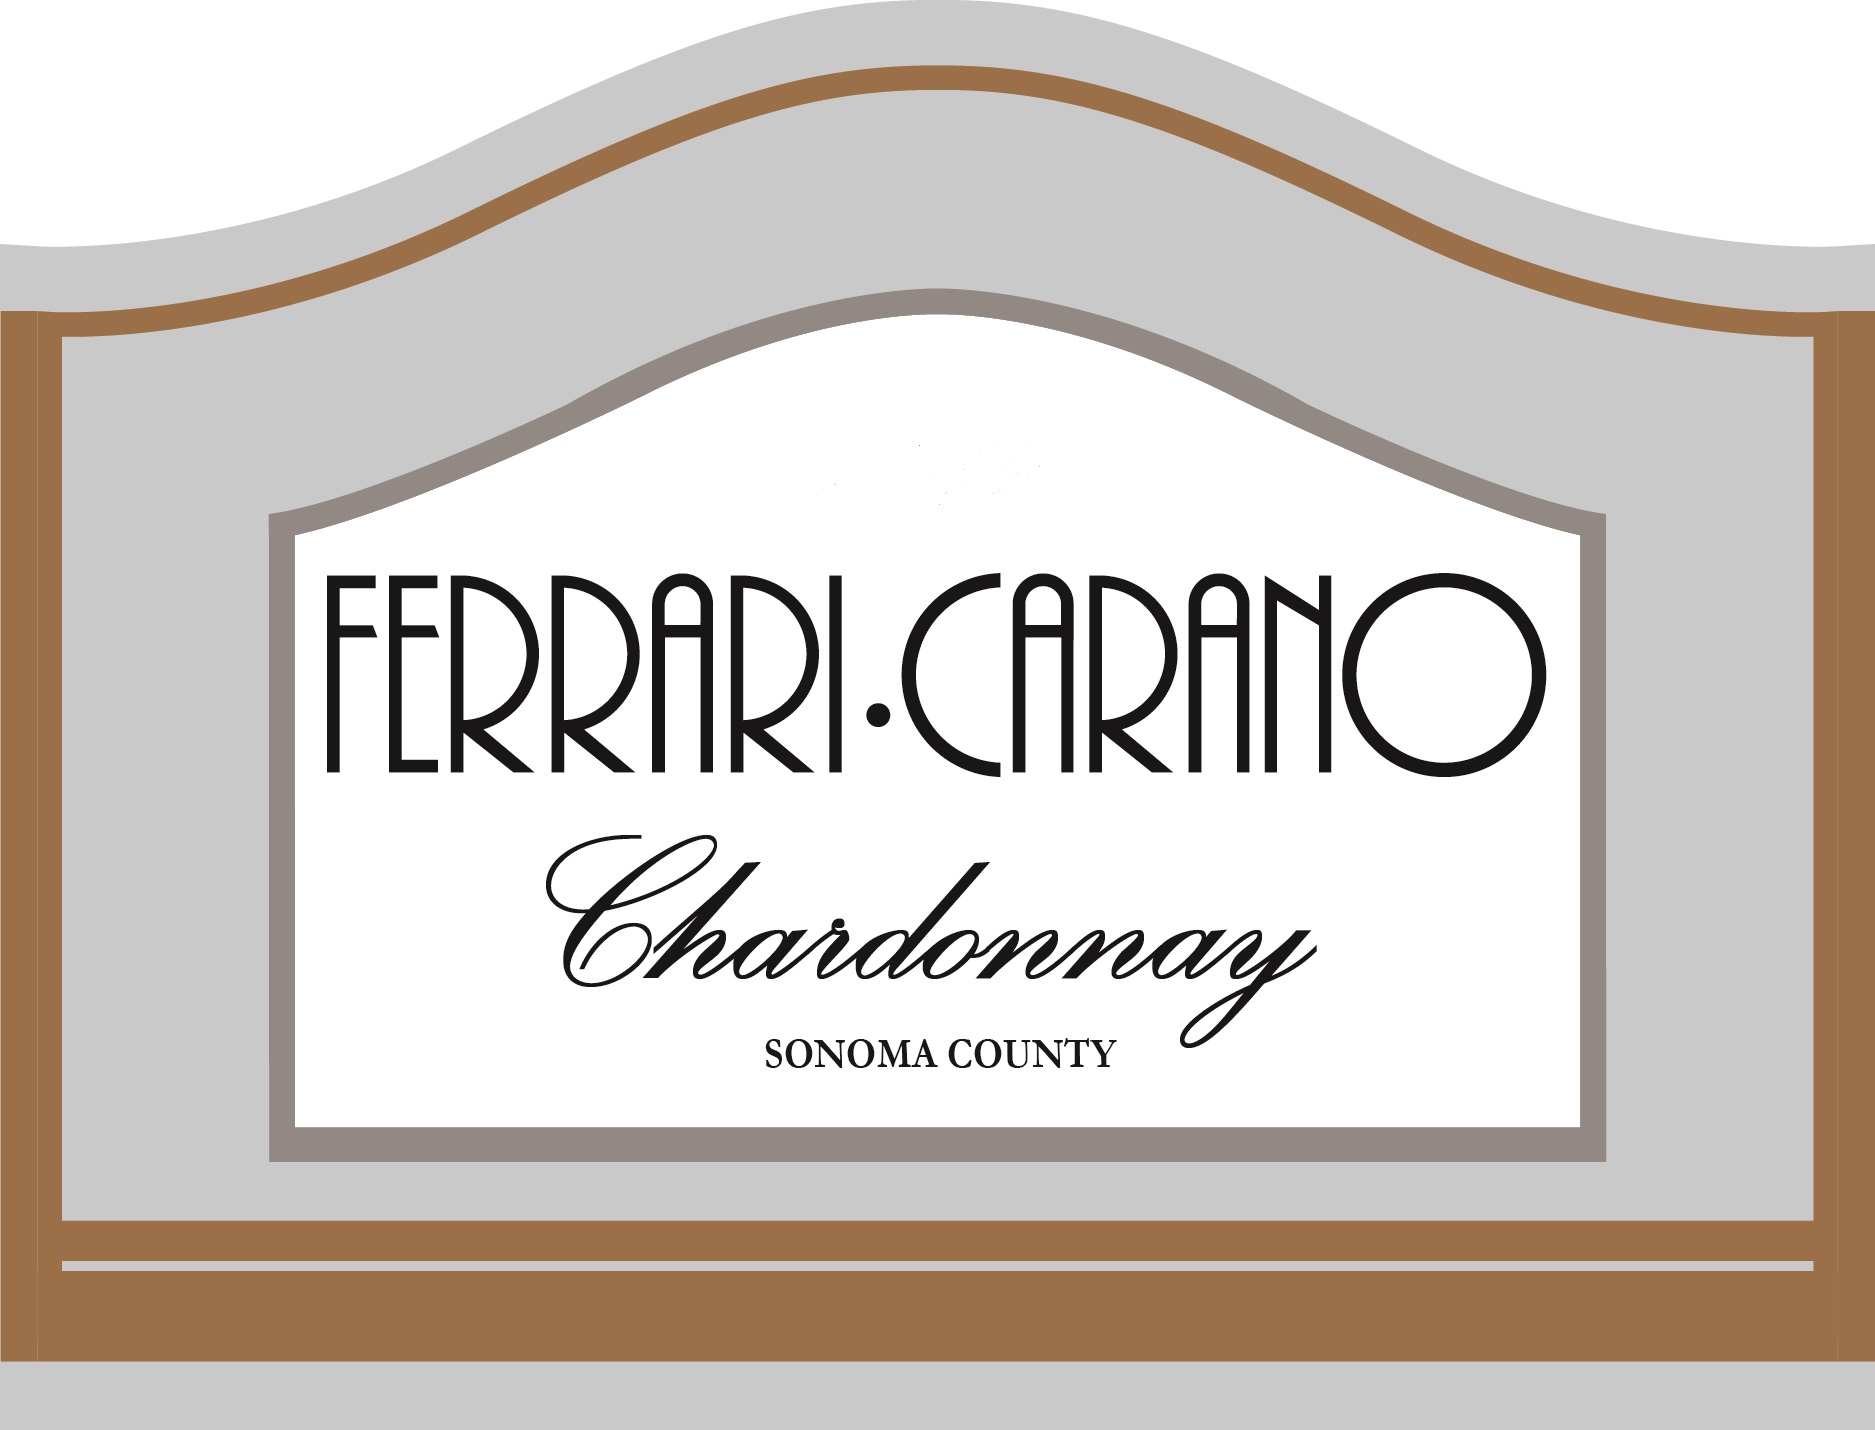 2022 Ferrari Carano Chardonnay Sonoma - click image for full description